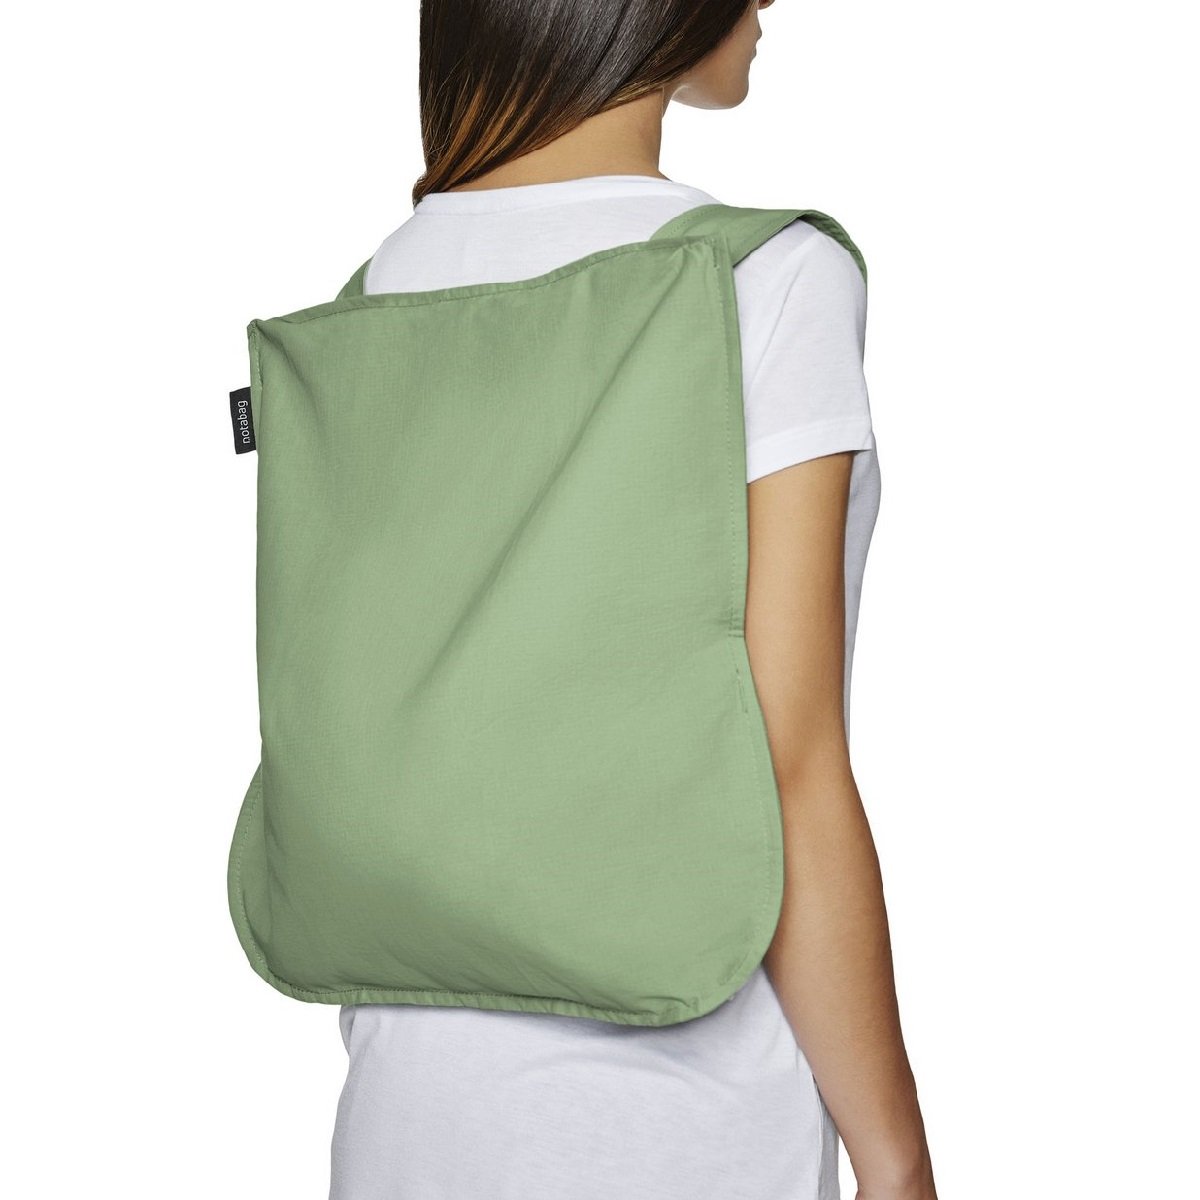 Notabag_Olive_convertibale_tote_bag_backpack_trendy.jpg